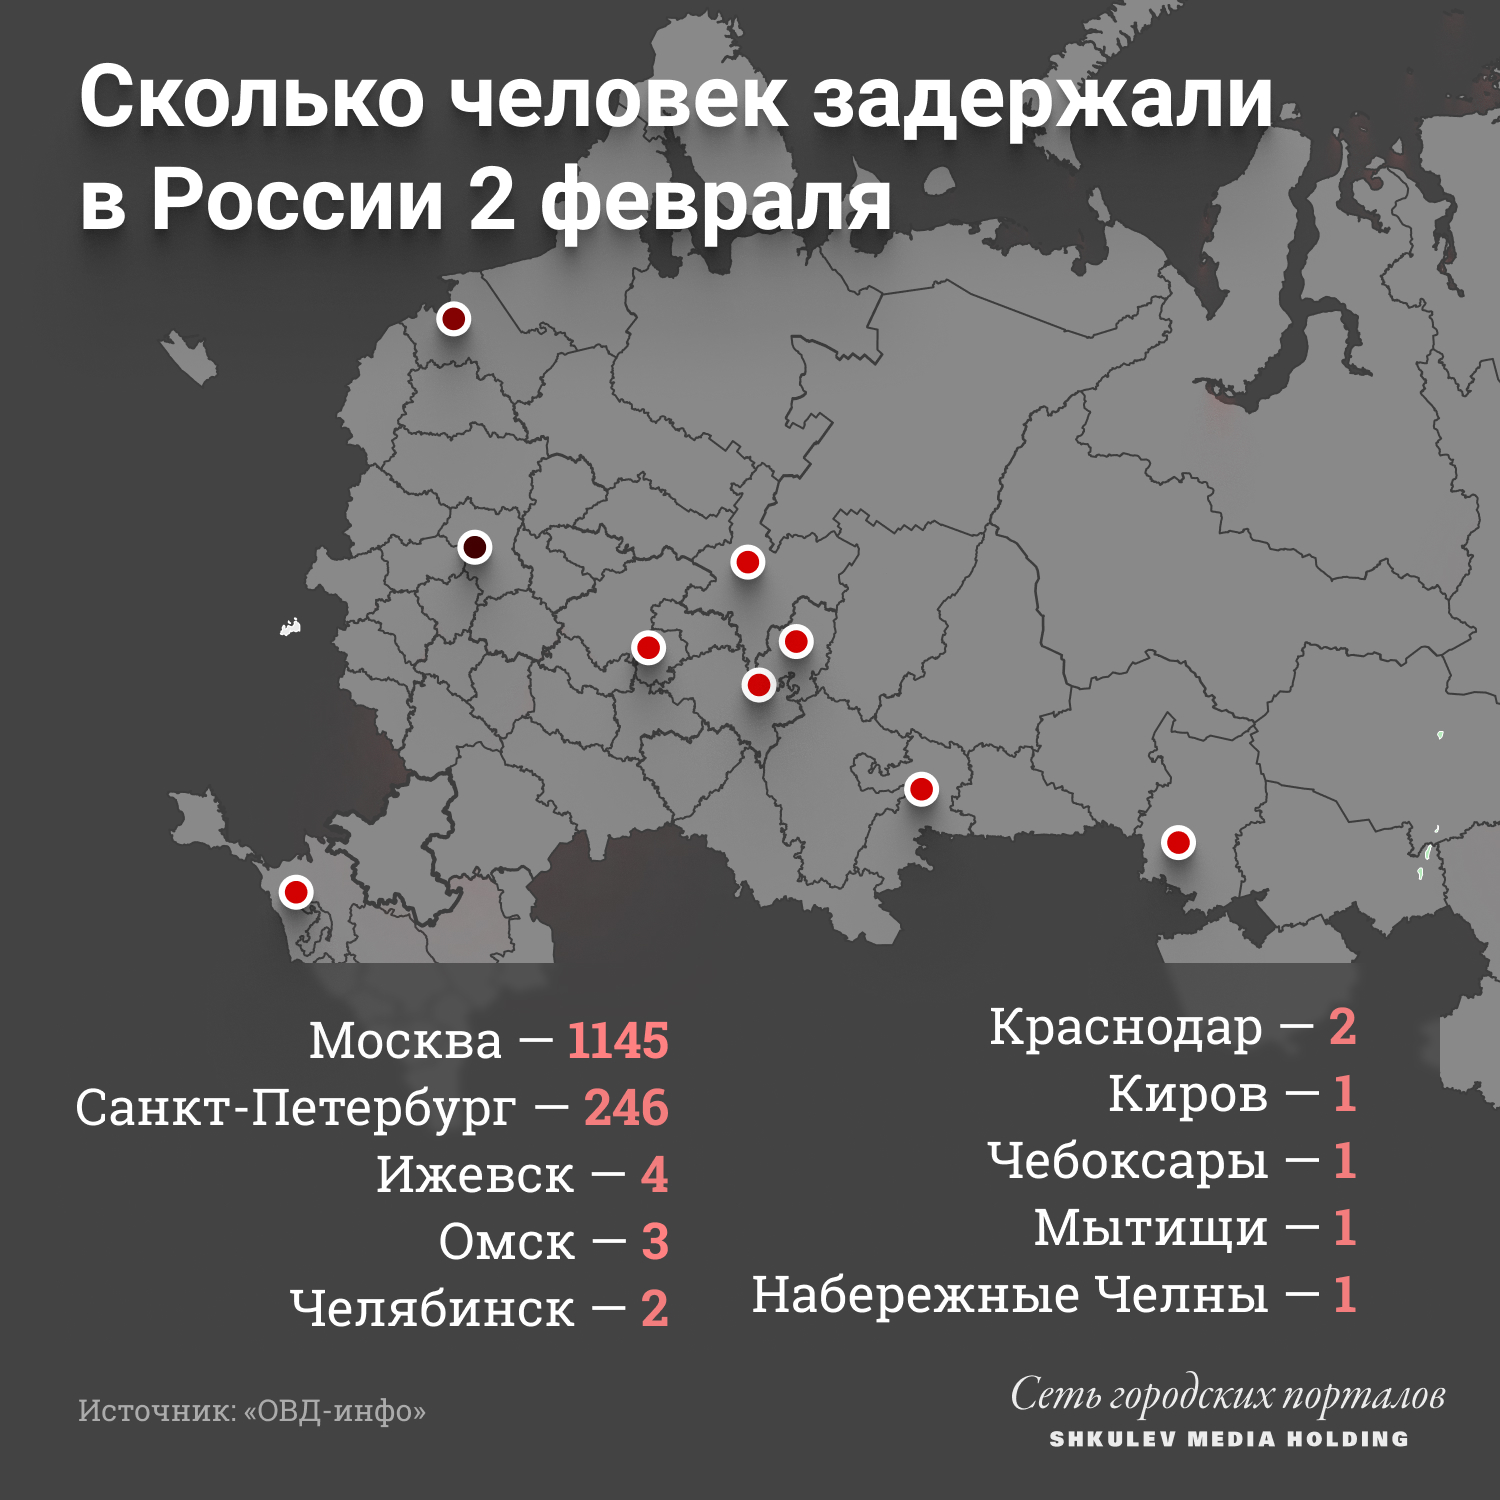 Больше всего задержаний 2 февраля было в Москве